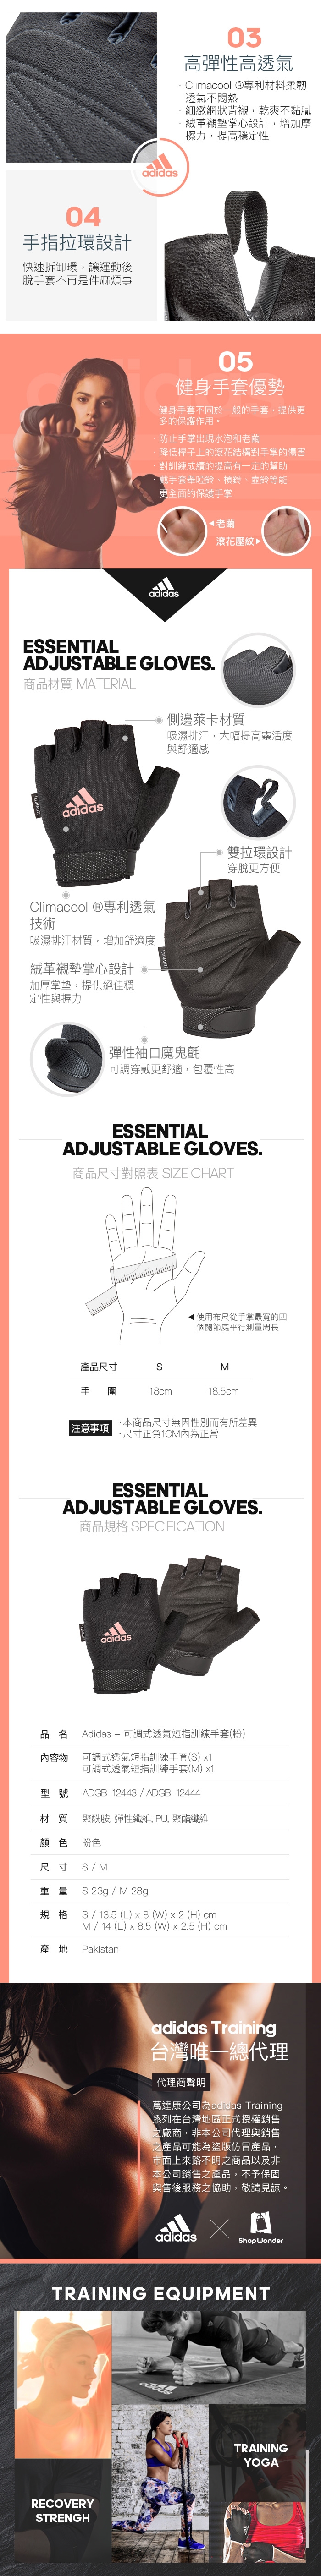 Adidas Training可調式透氣短指女用訓練手套(粉)